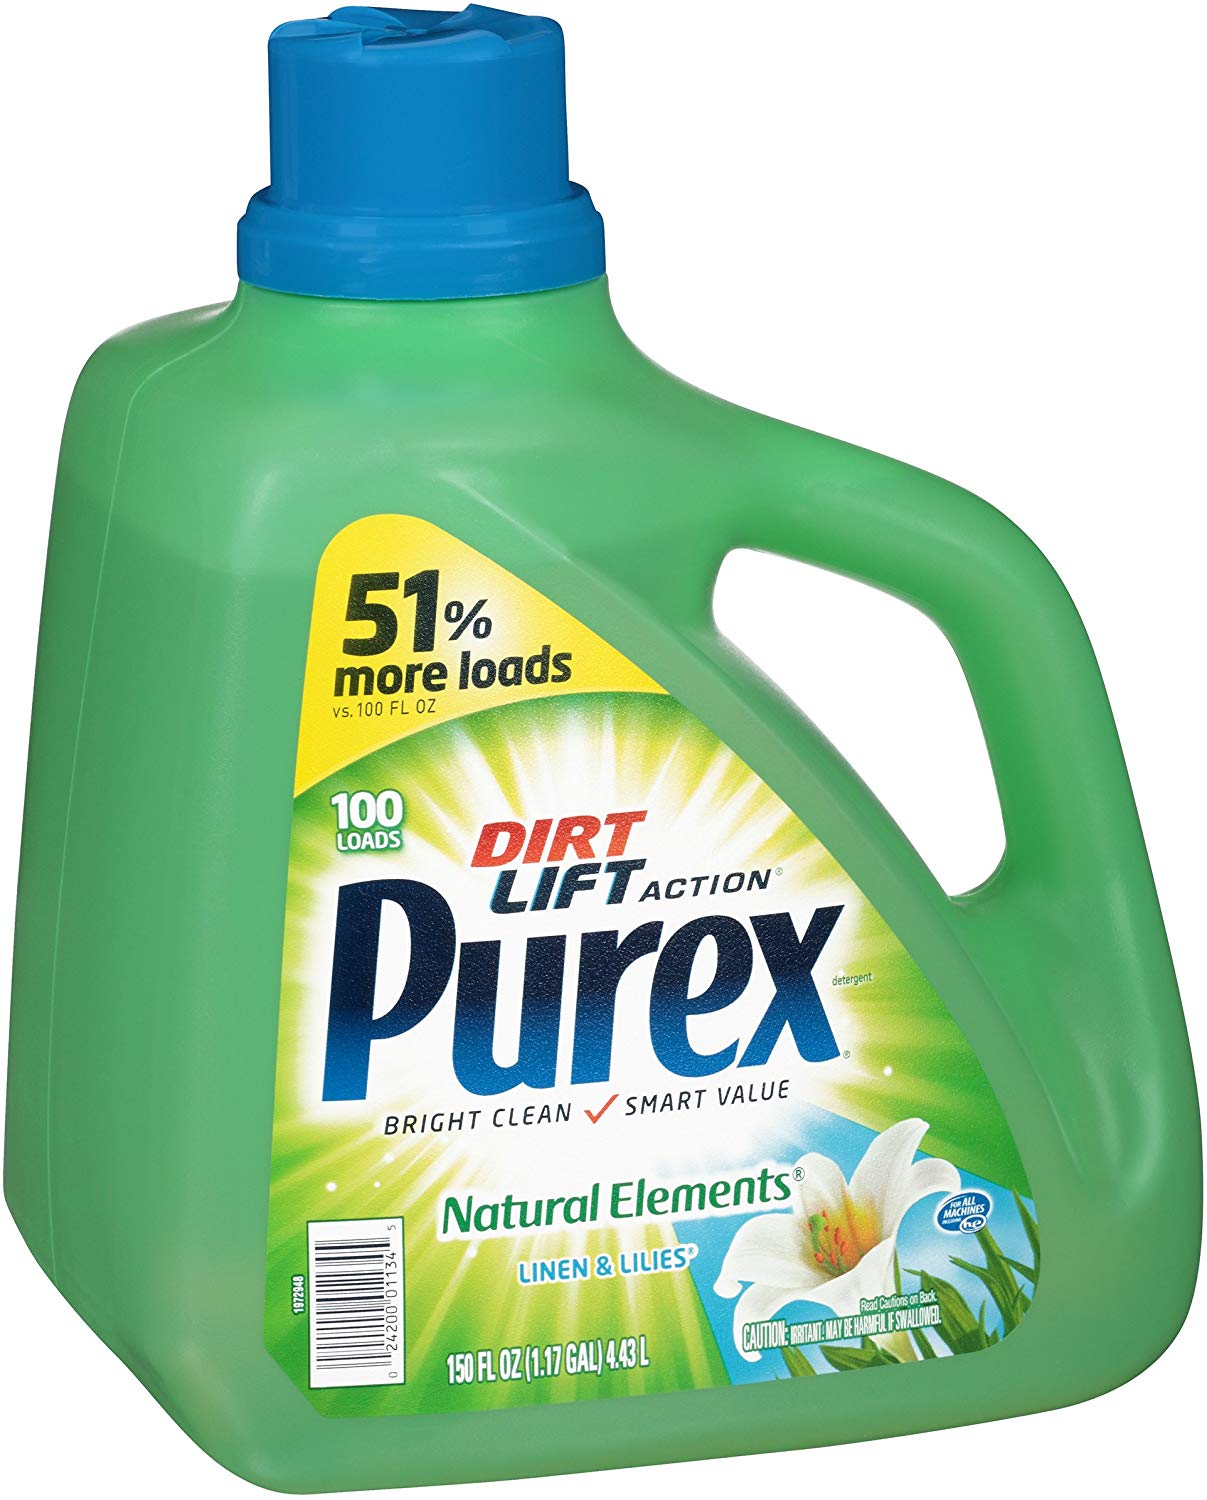 Purex Liquid Laundry Detergent, Natural Elements Linen & Lilies, 150 oz (100 loads) $6.44 (REG $23.69)